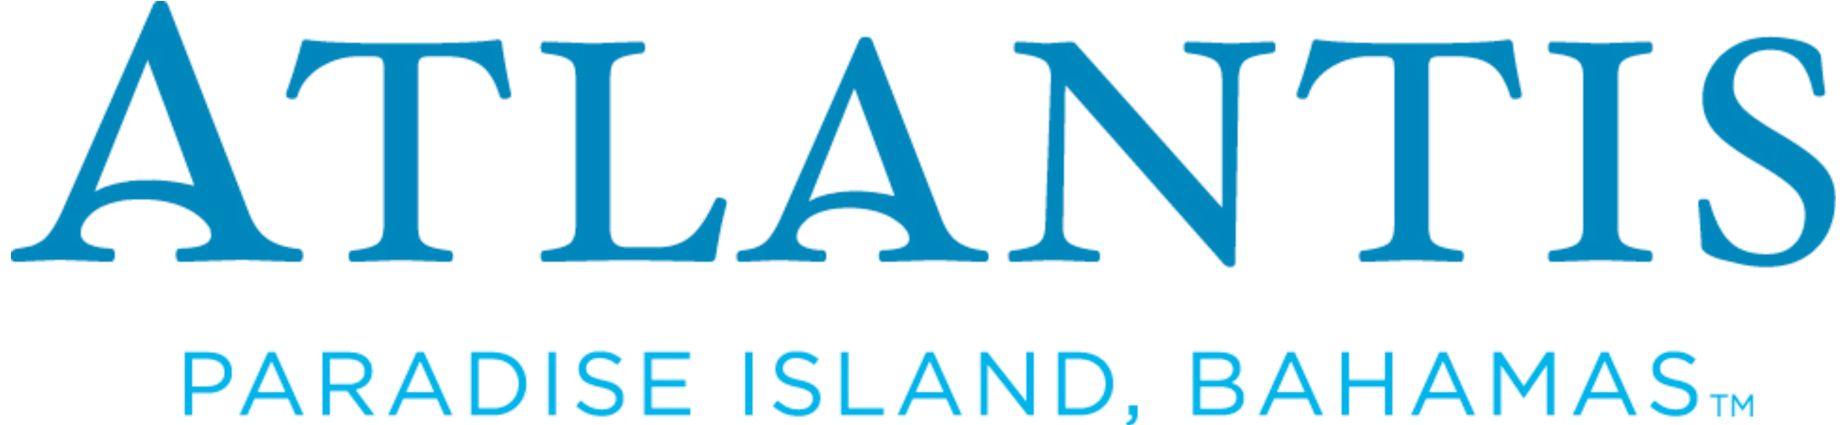 Atlantis Logo - Atlantis Paradise Vacation Package